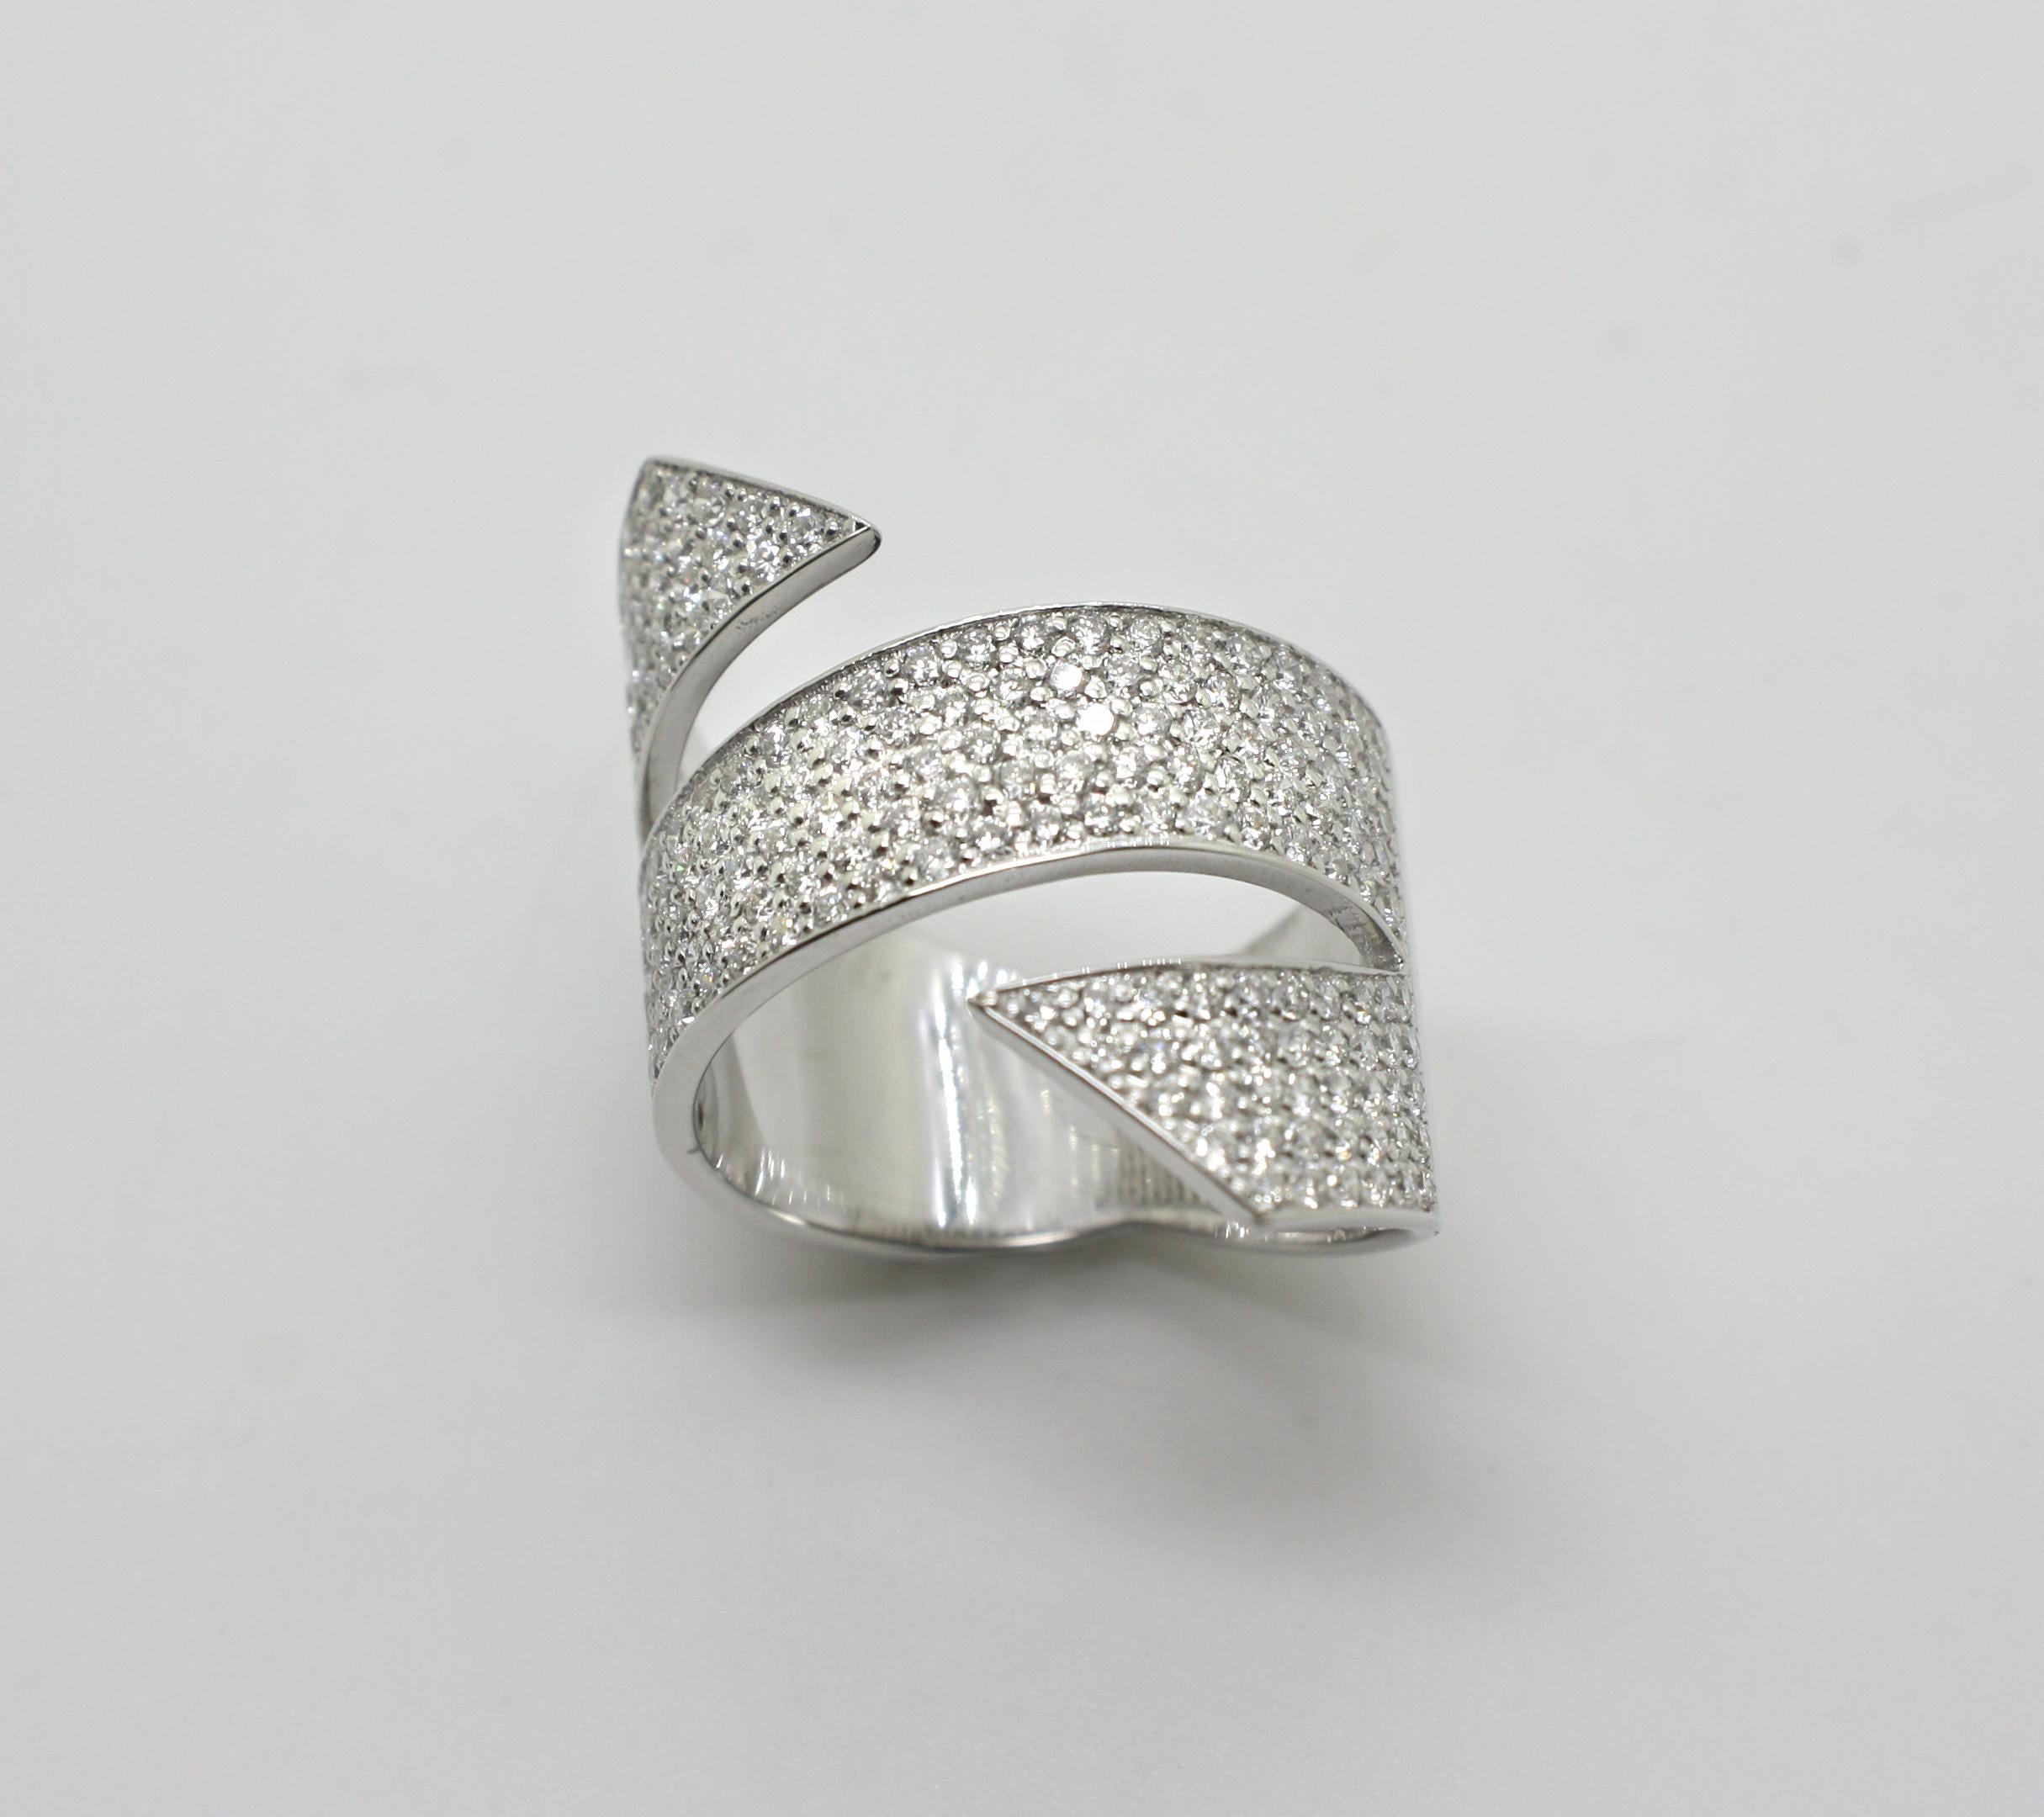 La bague à large anneau en or blanc 18 carats et diamants du designer S.Georgios est entièrement réalisée à la main dans un design unique en spirale. Le large anneau est orné de diamants blancs taille brillant d'un poids total de 1,50 carat, ce qui